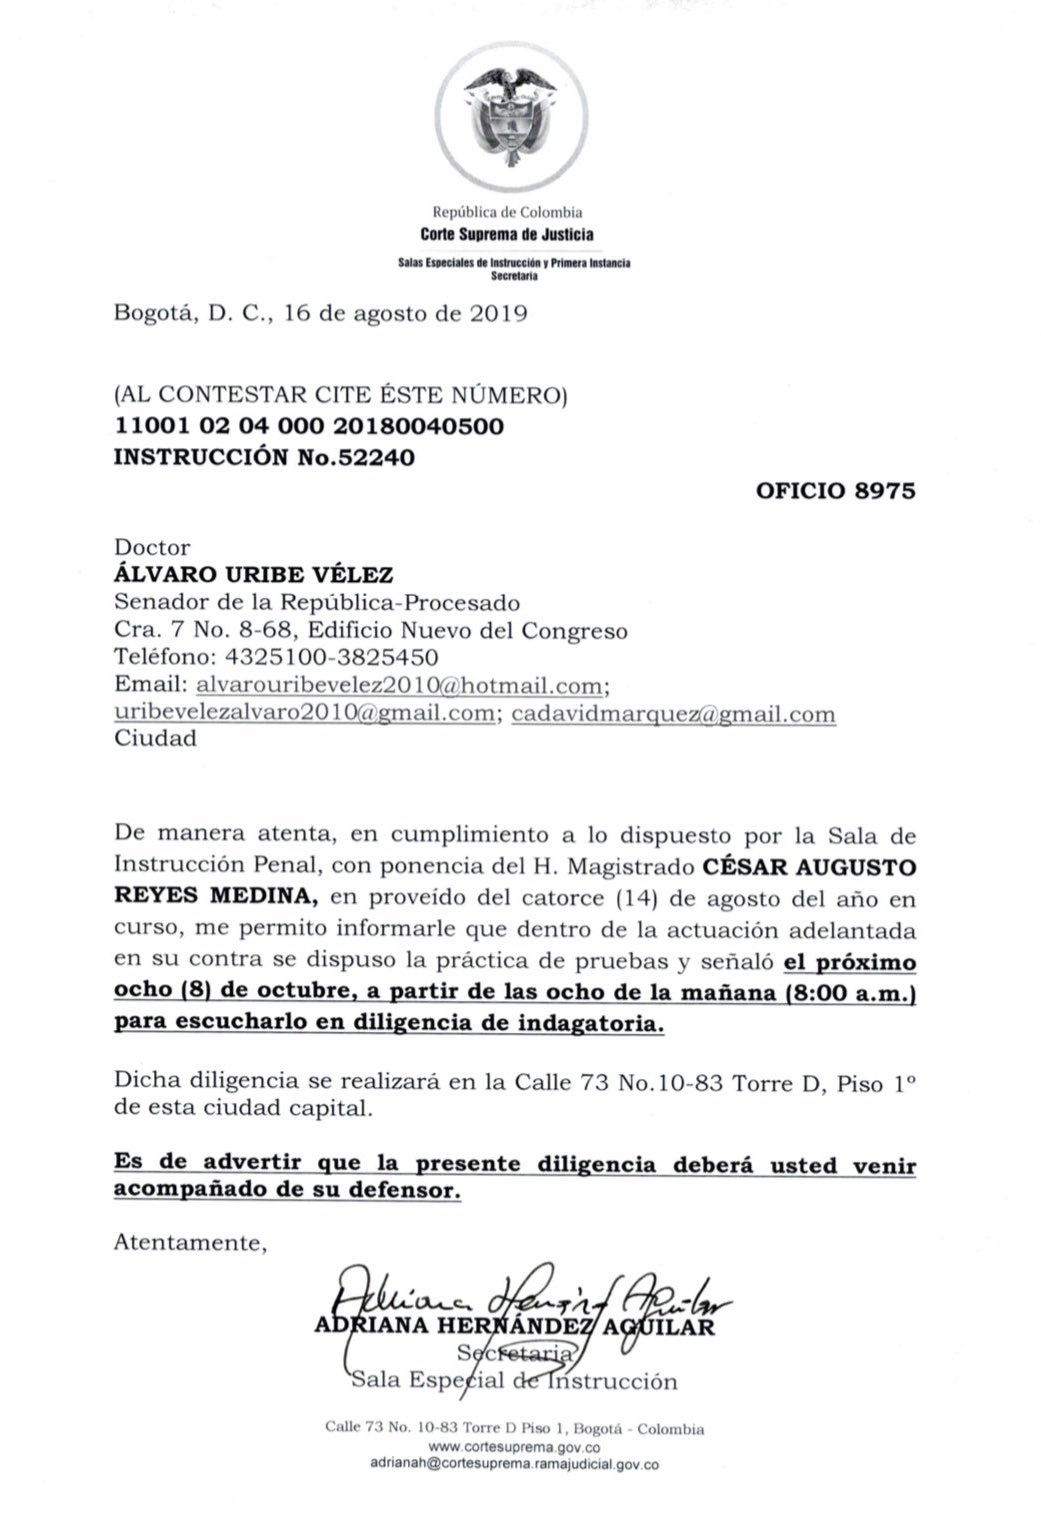 Citación al expresidente Álvaro Uribe Vélez por parte de la Corte Suprema de Justicia.